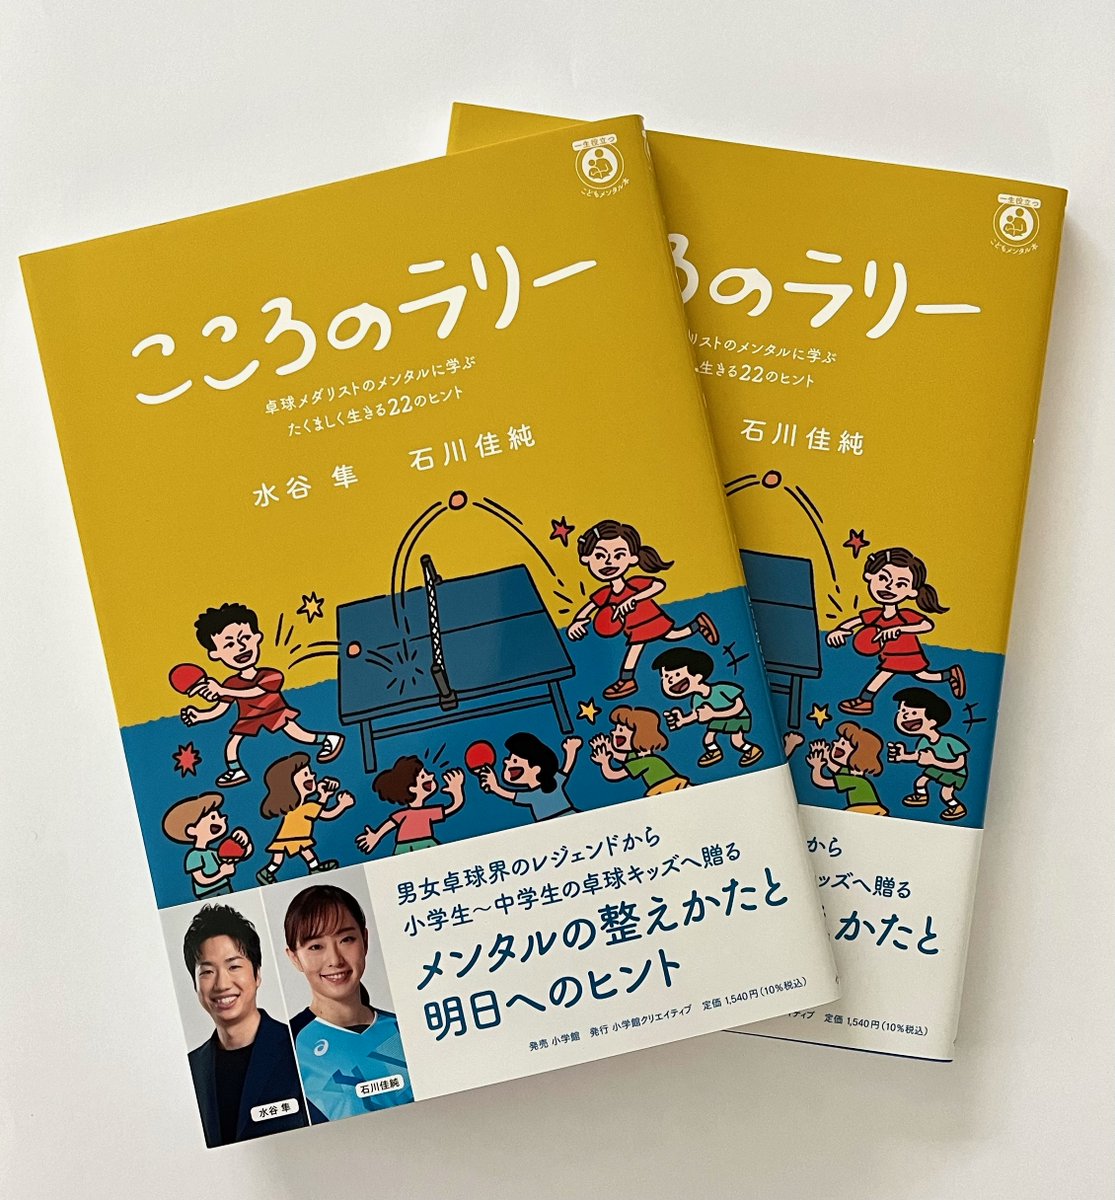 卓球界のスーパースター、水谷隼さんと石川佳純さんによるスポーツキッズのためのメンタルアドバイス本『こころのラリー』が発売になりました。 構成担当としてとても楽しい仕事でした。大人から子どもたちへのプレゼントとして超おすすめです！ x.gd/AiE0v